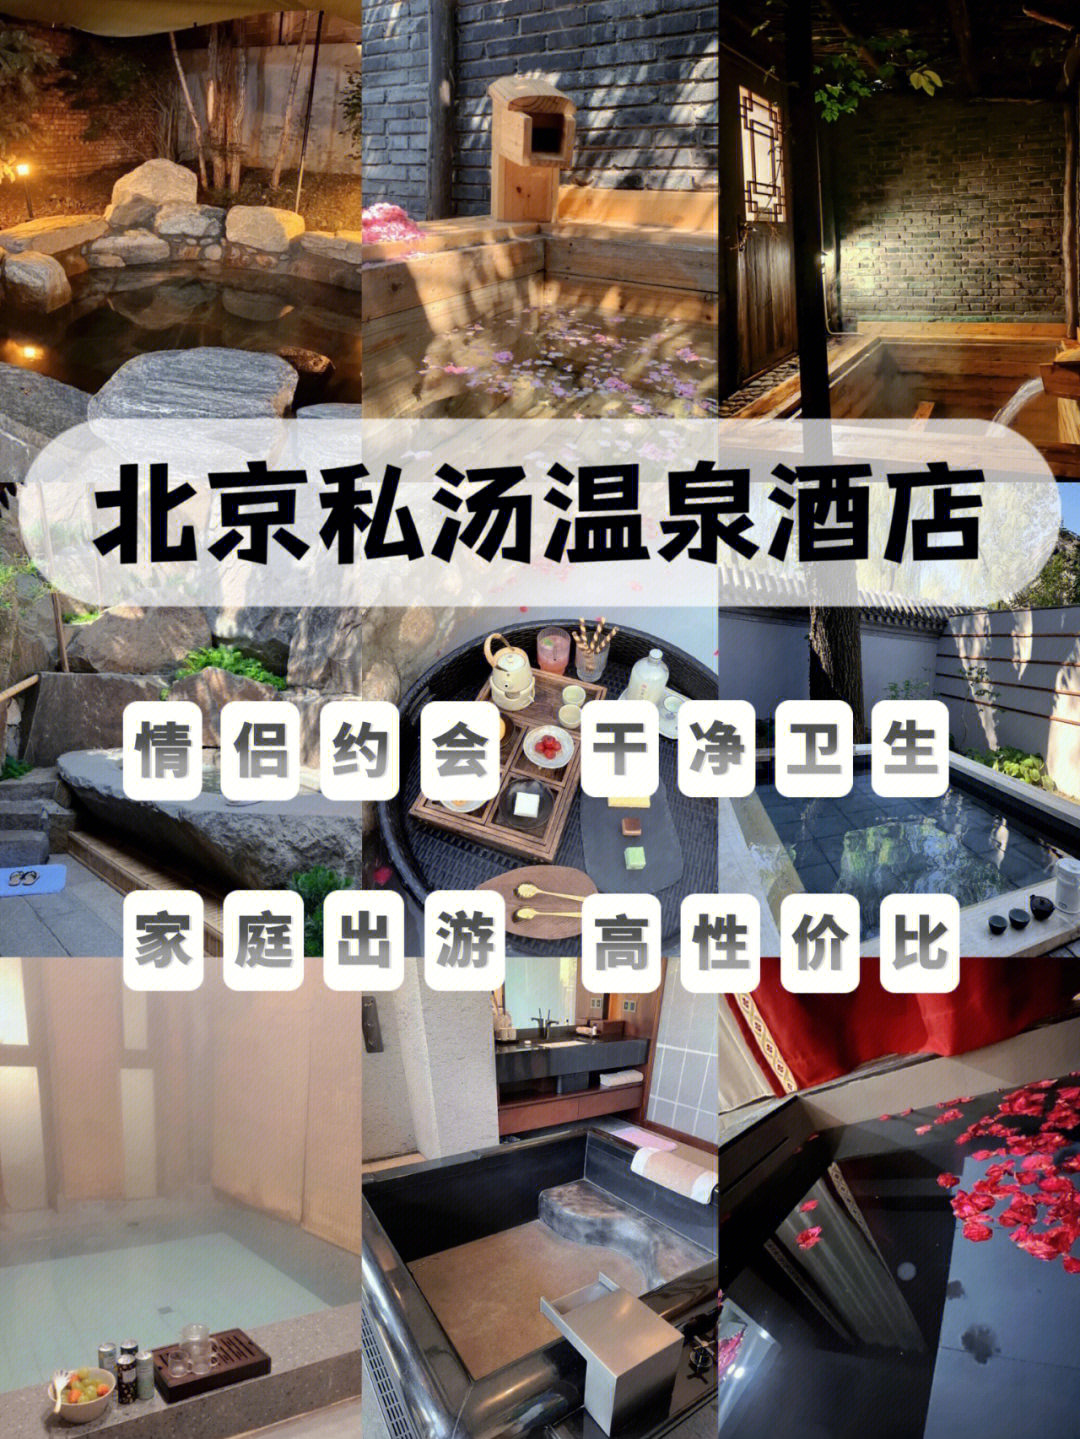 北京十大温泉酒店排名图片